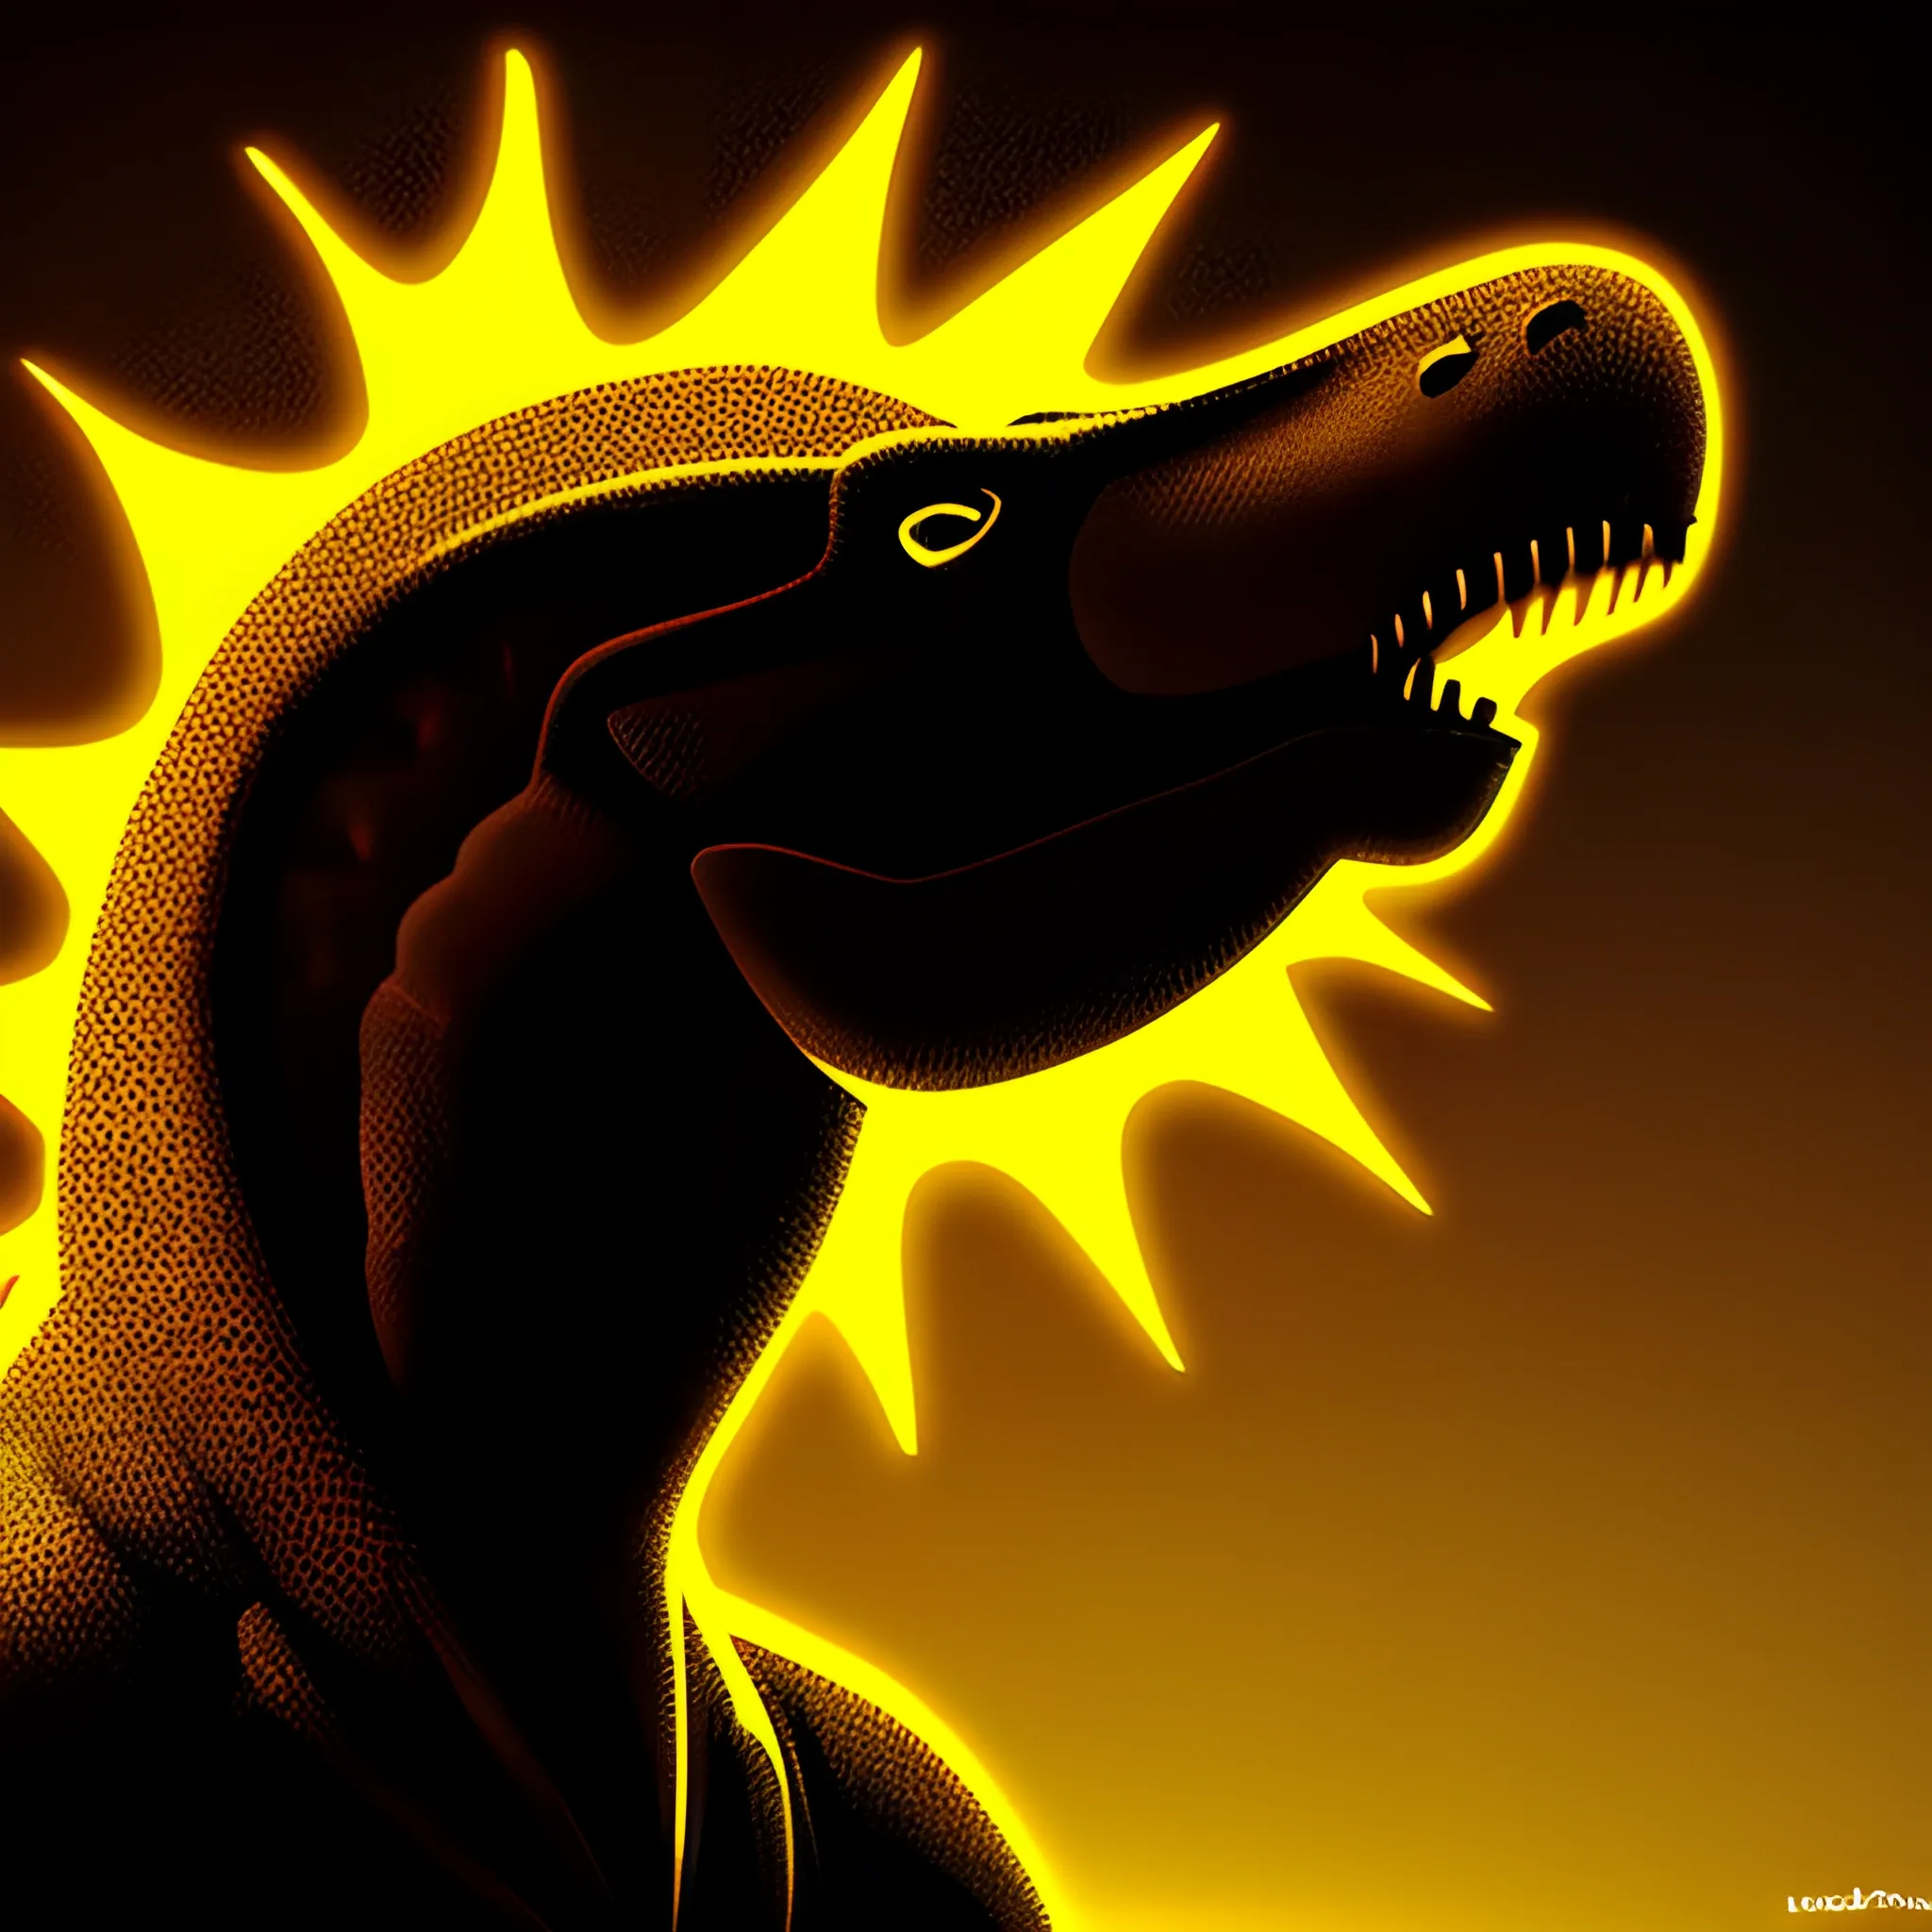 technological head dinosaur in shadow, Trippy, Cartoon